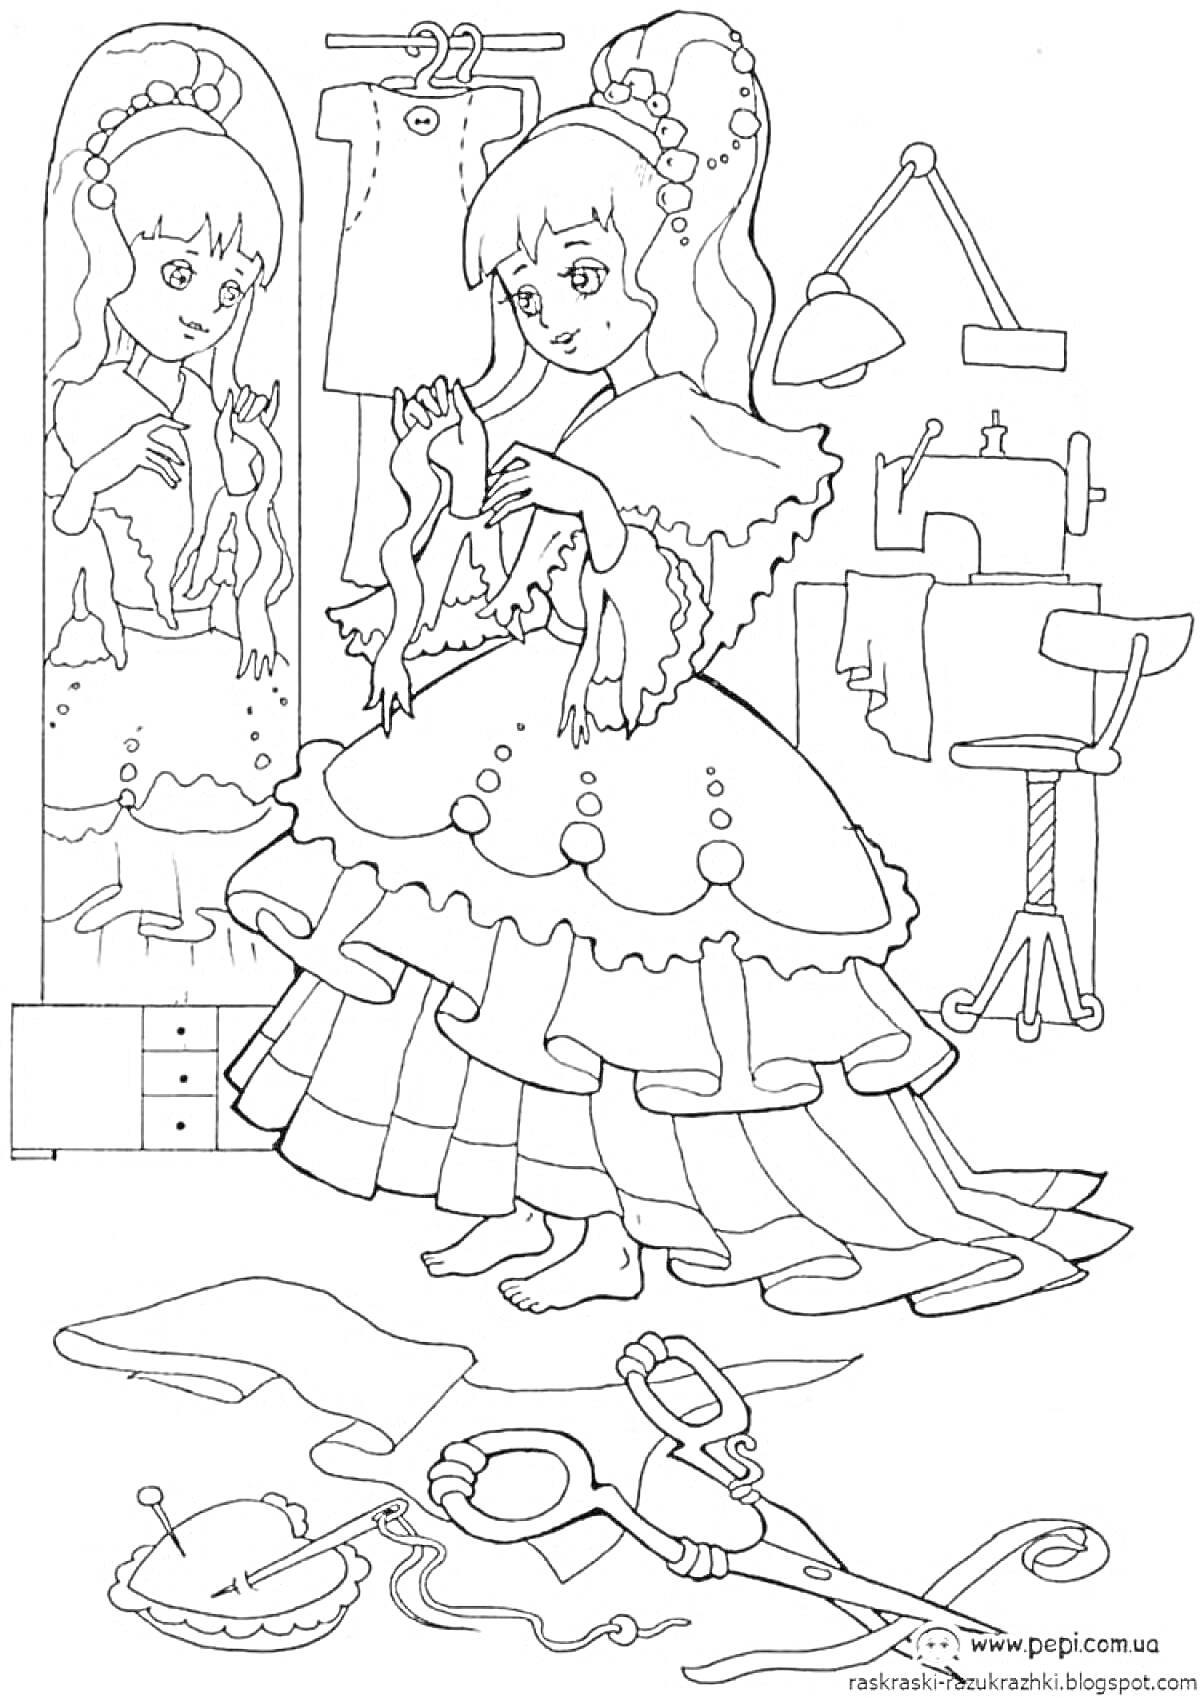 Раскраска Девочка шьёт платье у зеркала в комнате с швейной машиной и манекеном